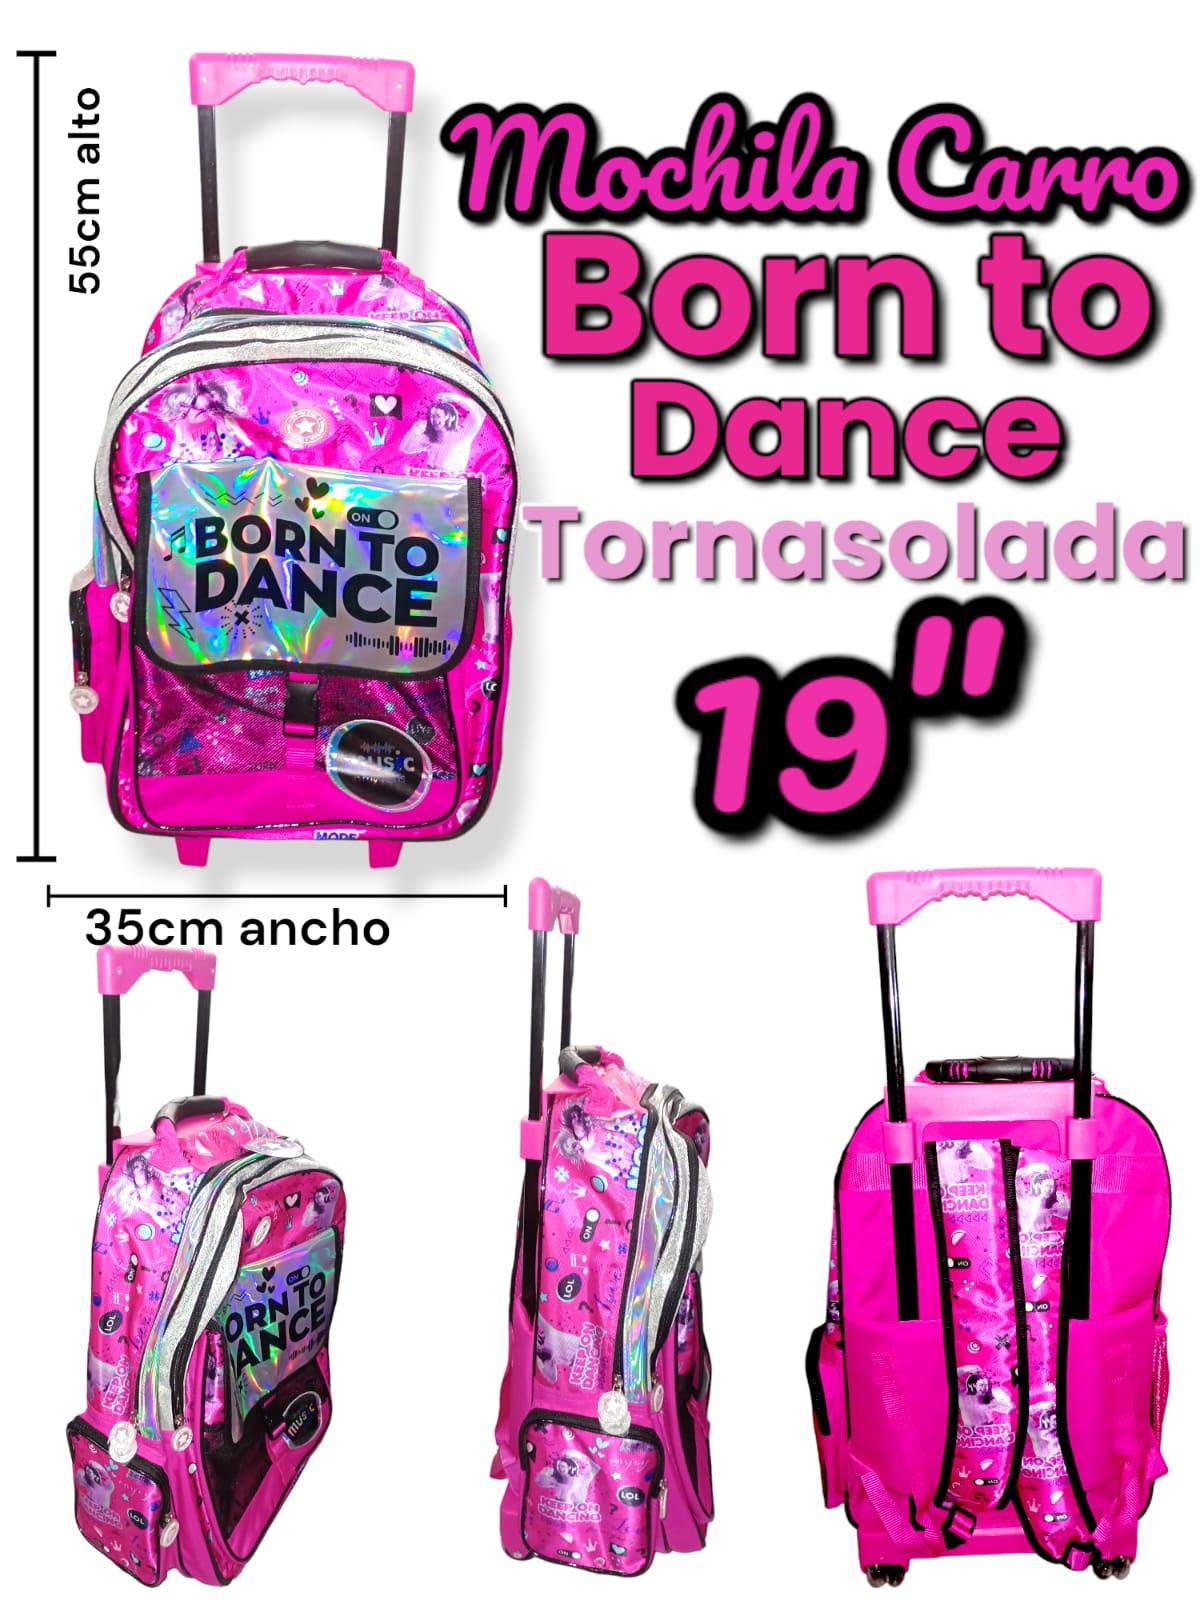 Mochila Carro BORN TO DANCE Tornasoladas 19